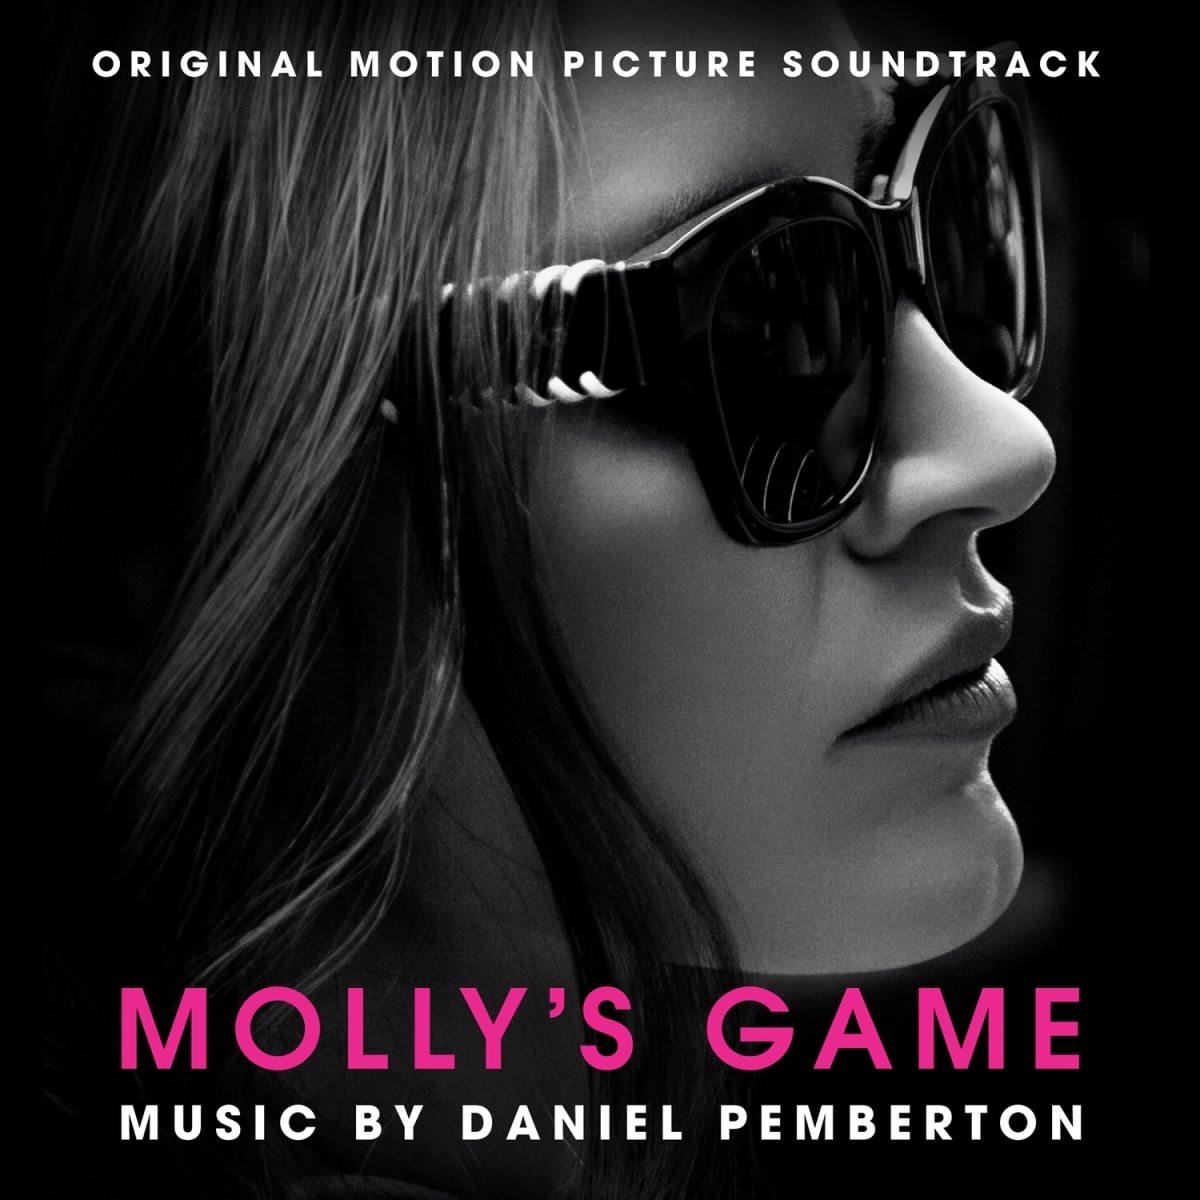 Daniel Pemberton - Molly’s Game (Original Motion Picture Soundtrack) (2018) [FLAC 24bit/48kHz]